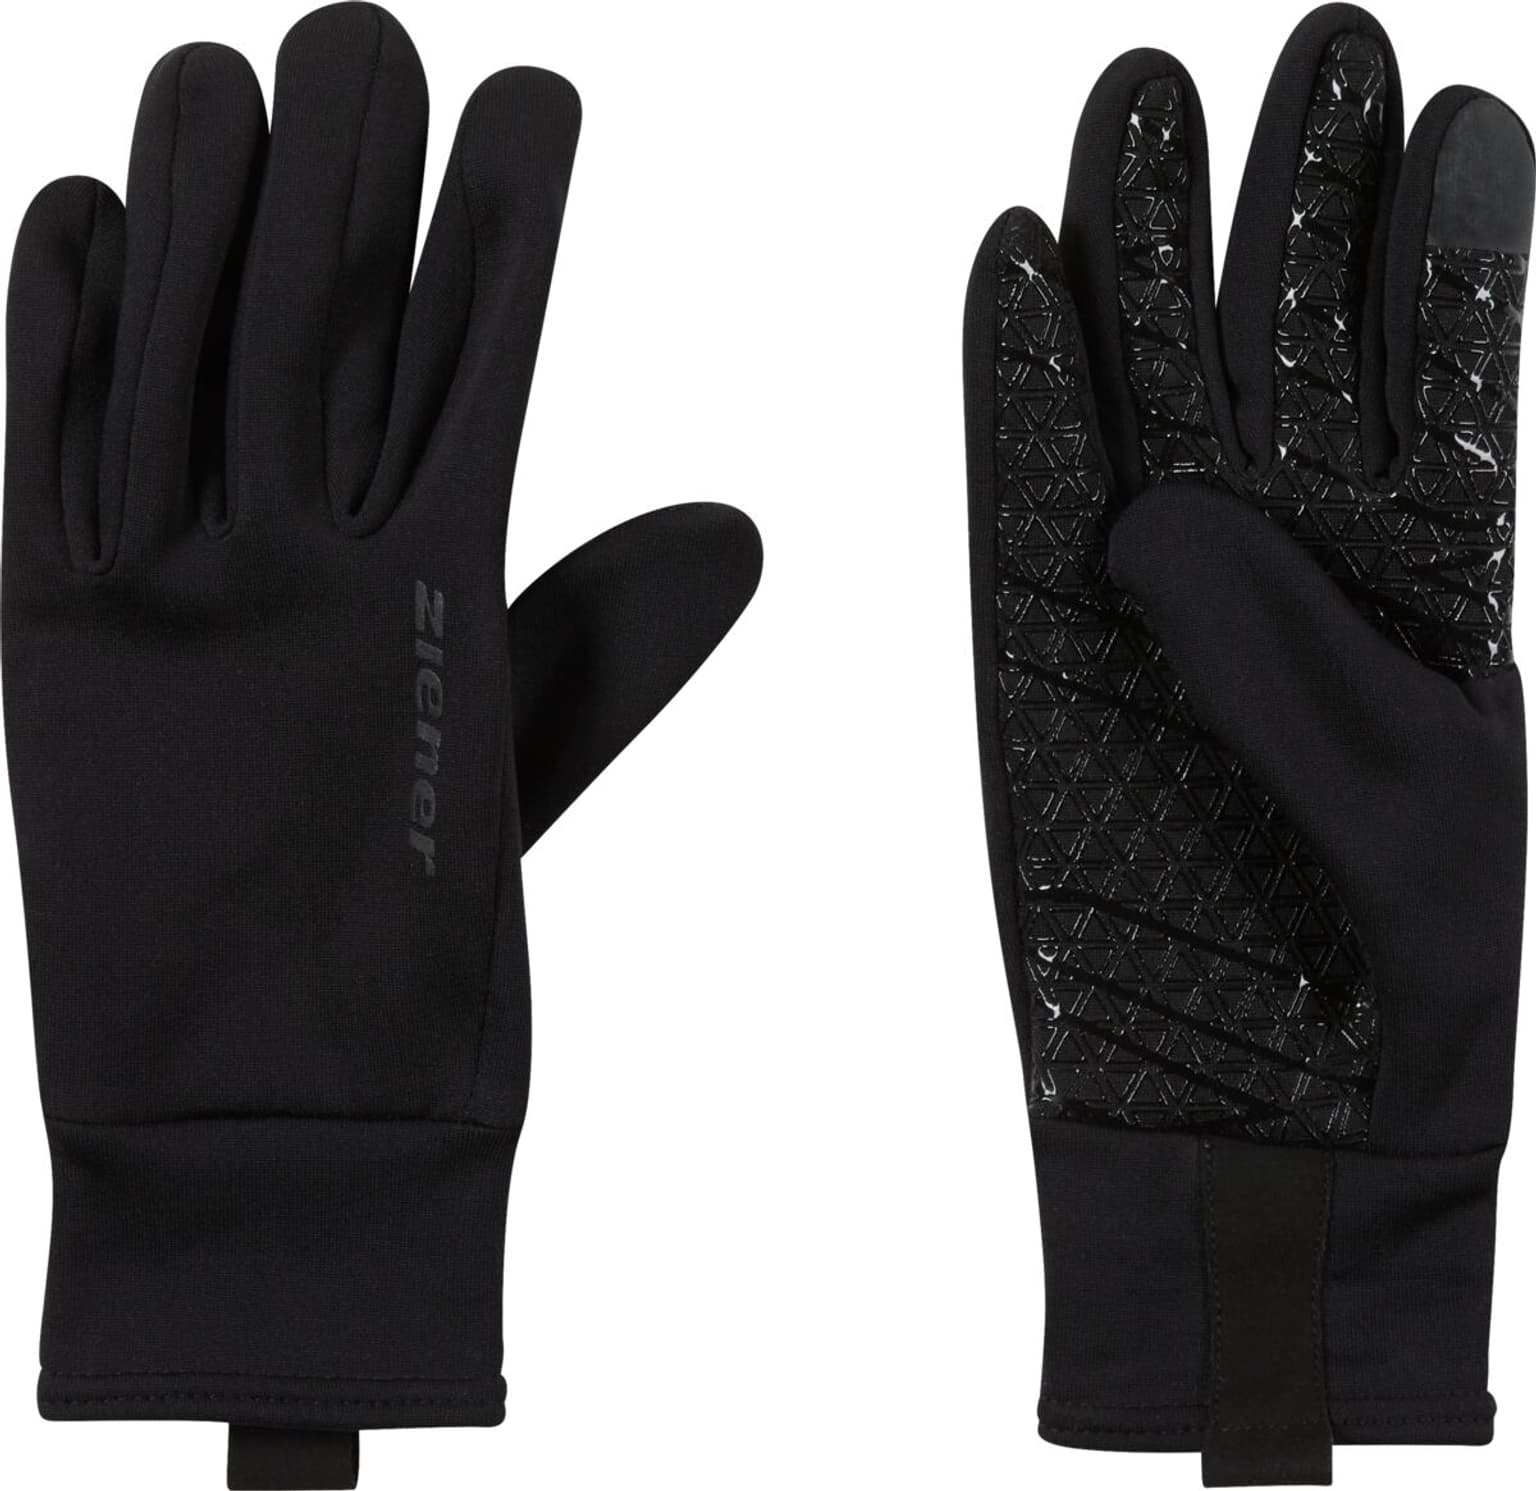 Ziener Ziener Multisport-Handschuhe Multisport-Handschuhe nero 1